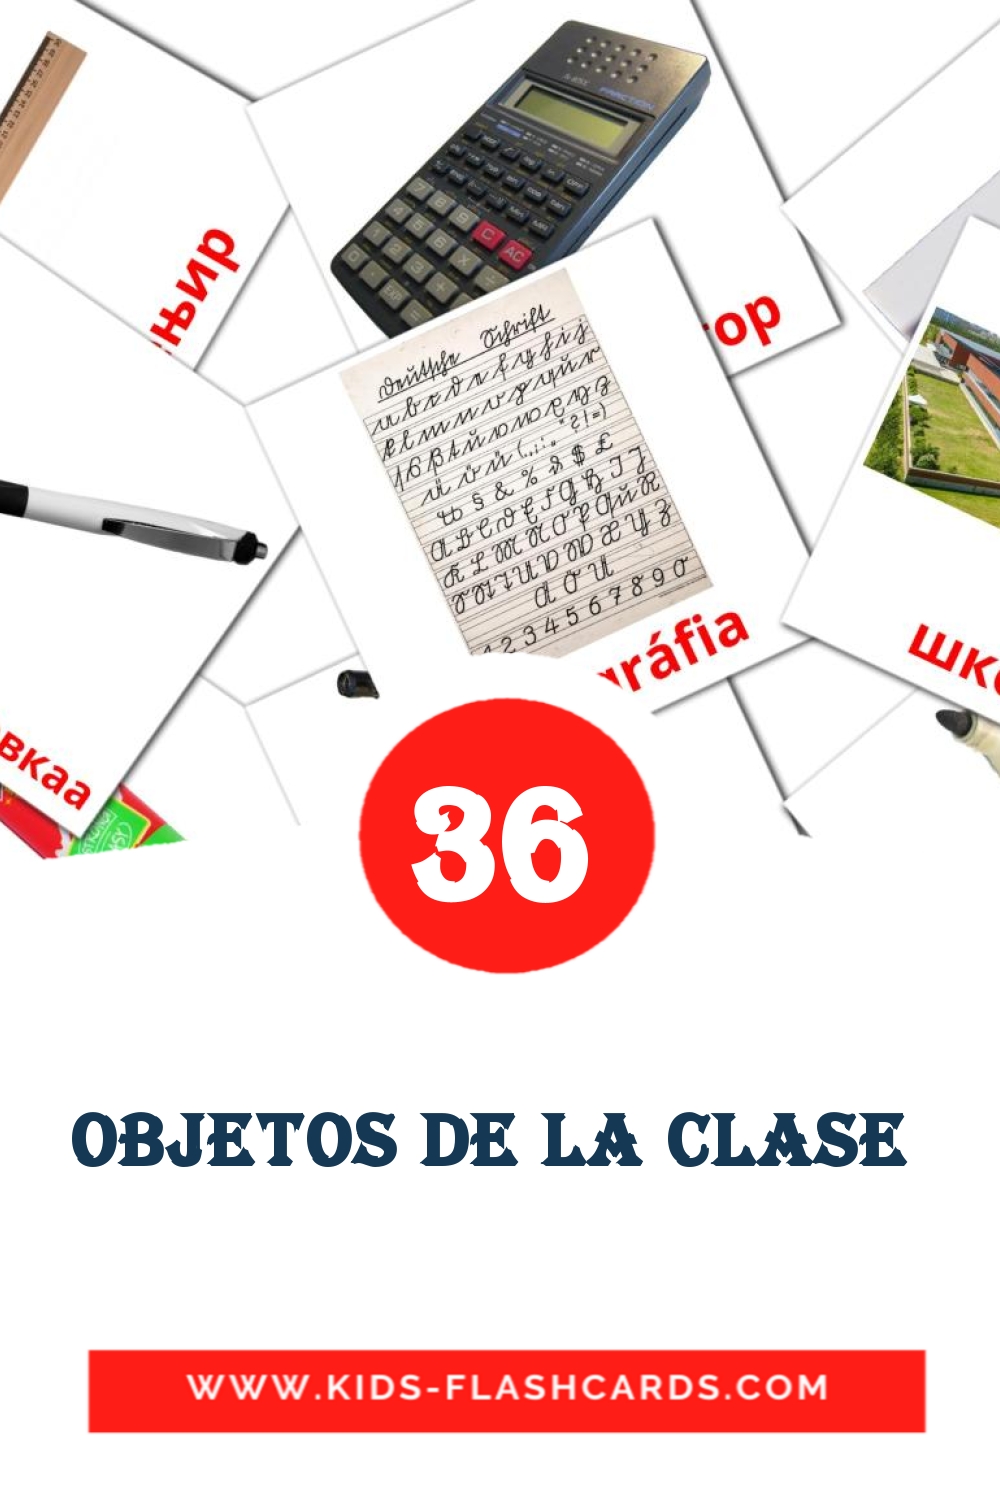 36 objetos de la clase  fotokaarten voor kleuters in het ahmaric